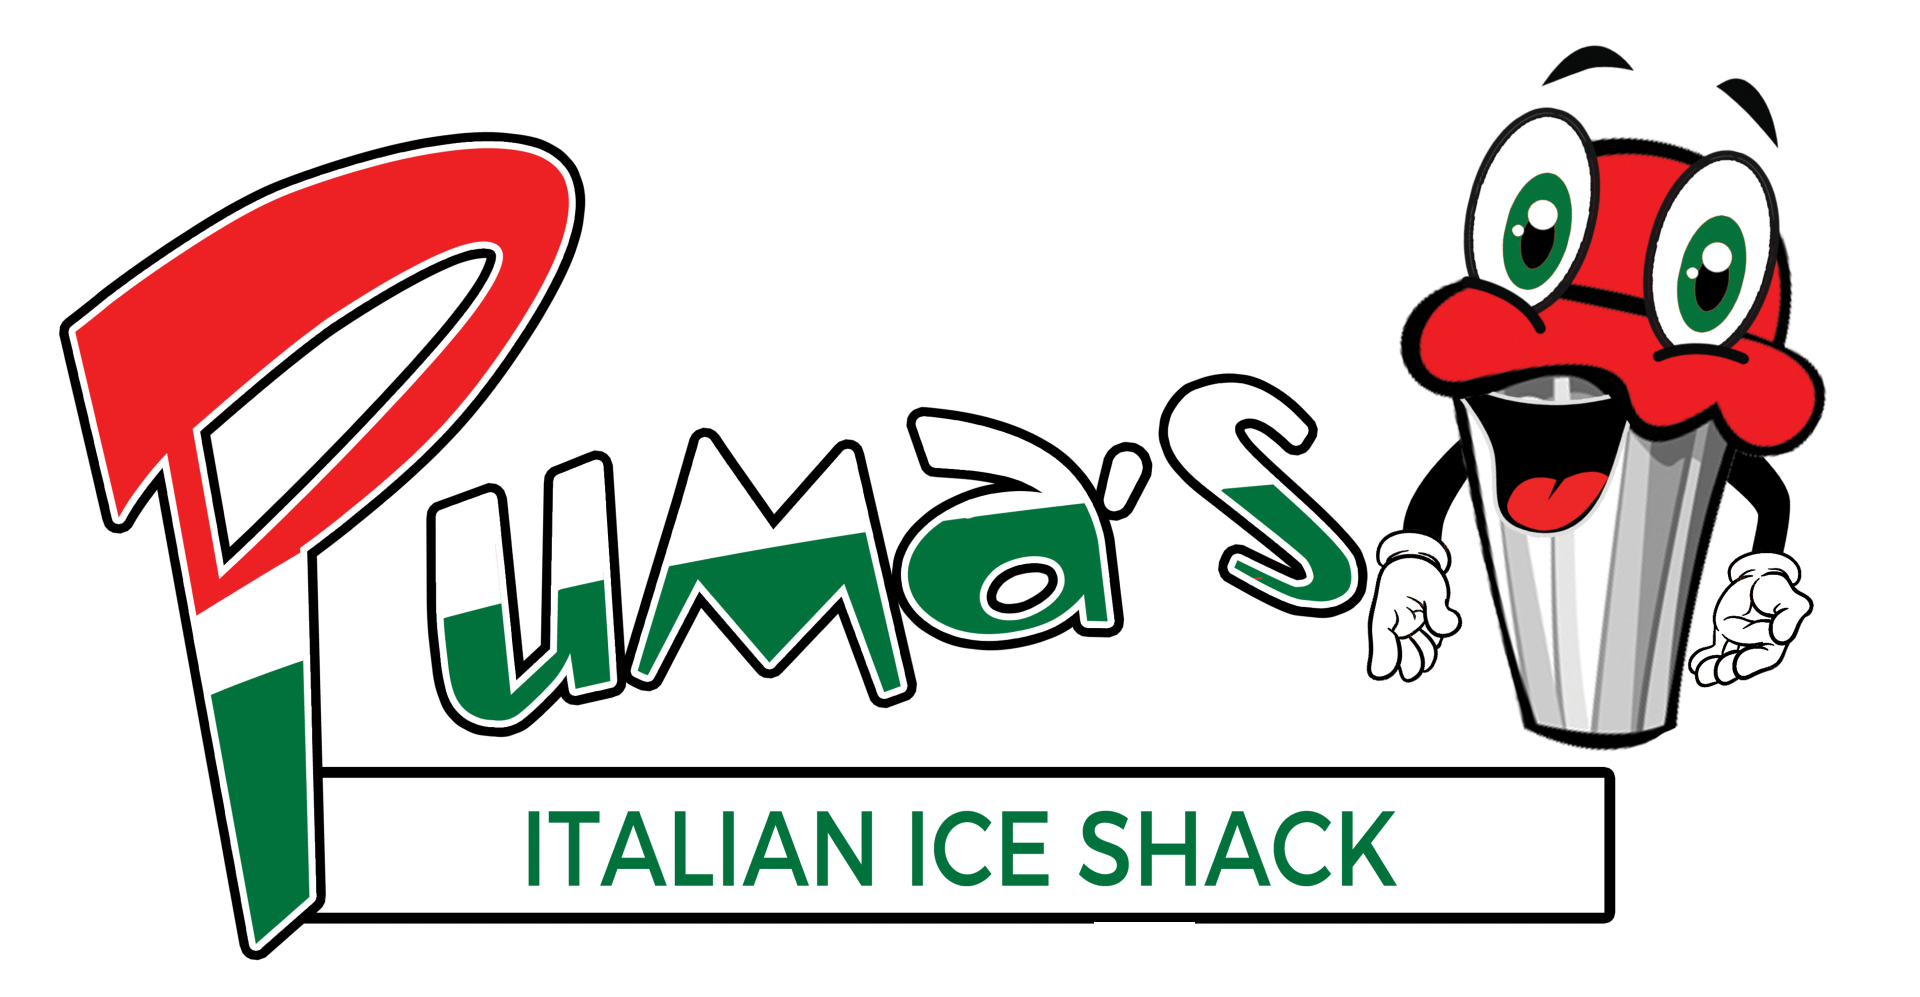 Puma's Italian Ice Shack